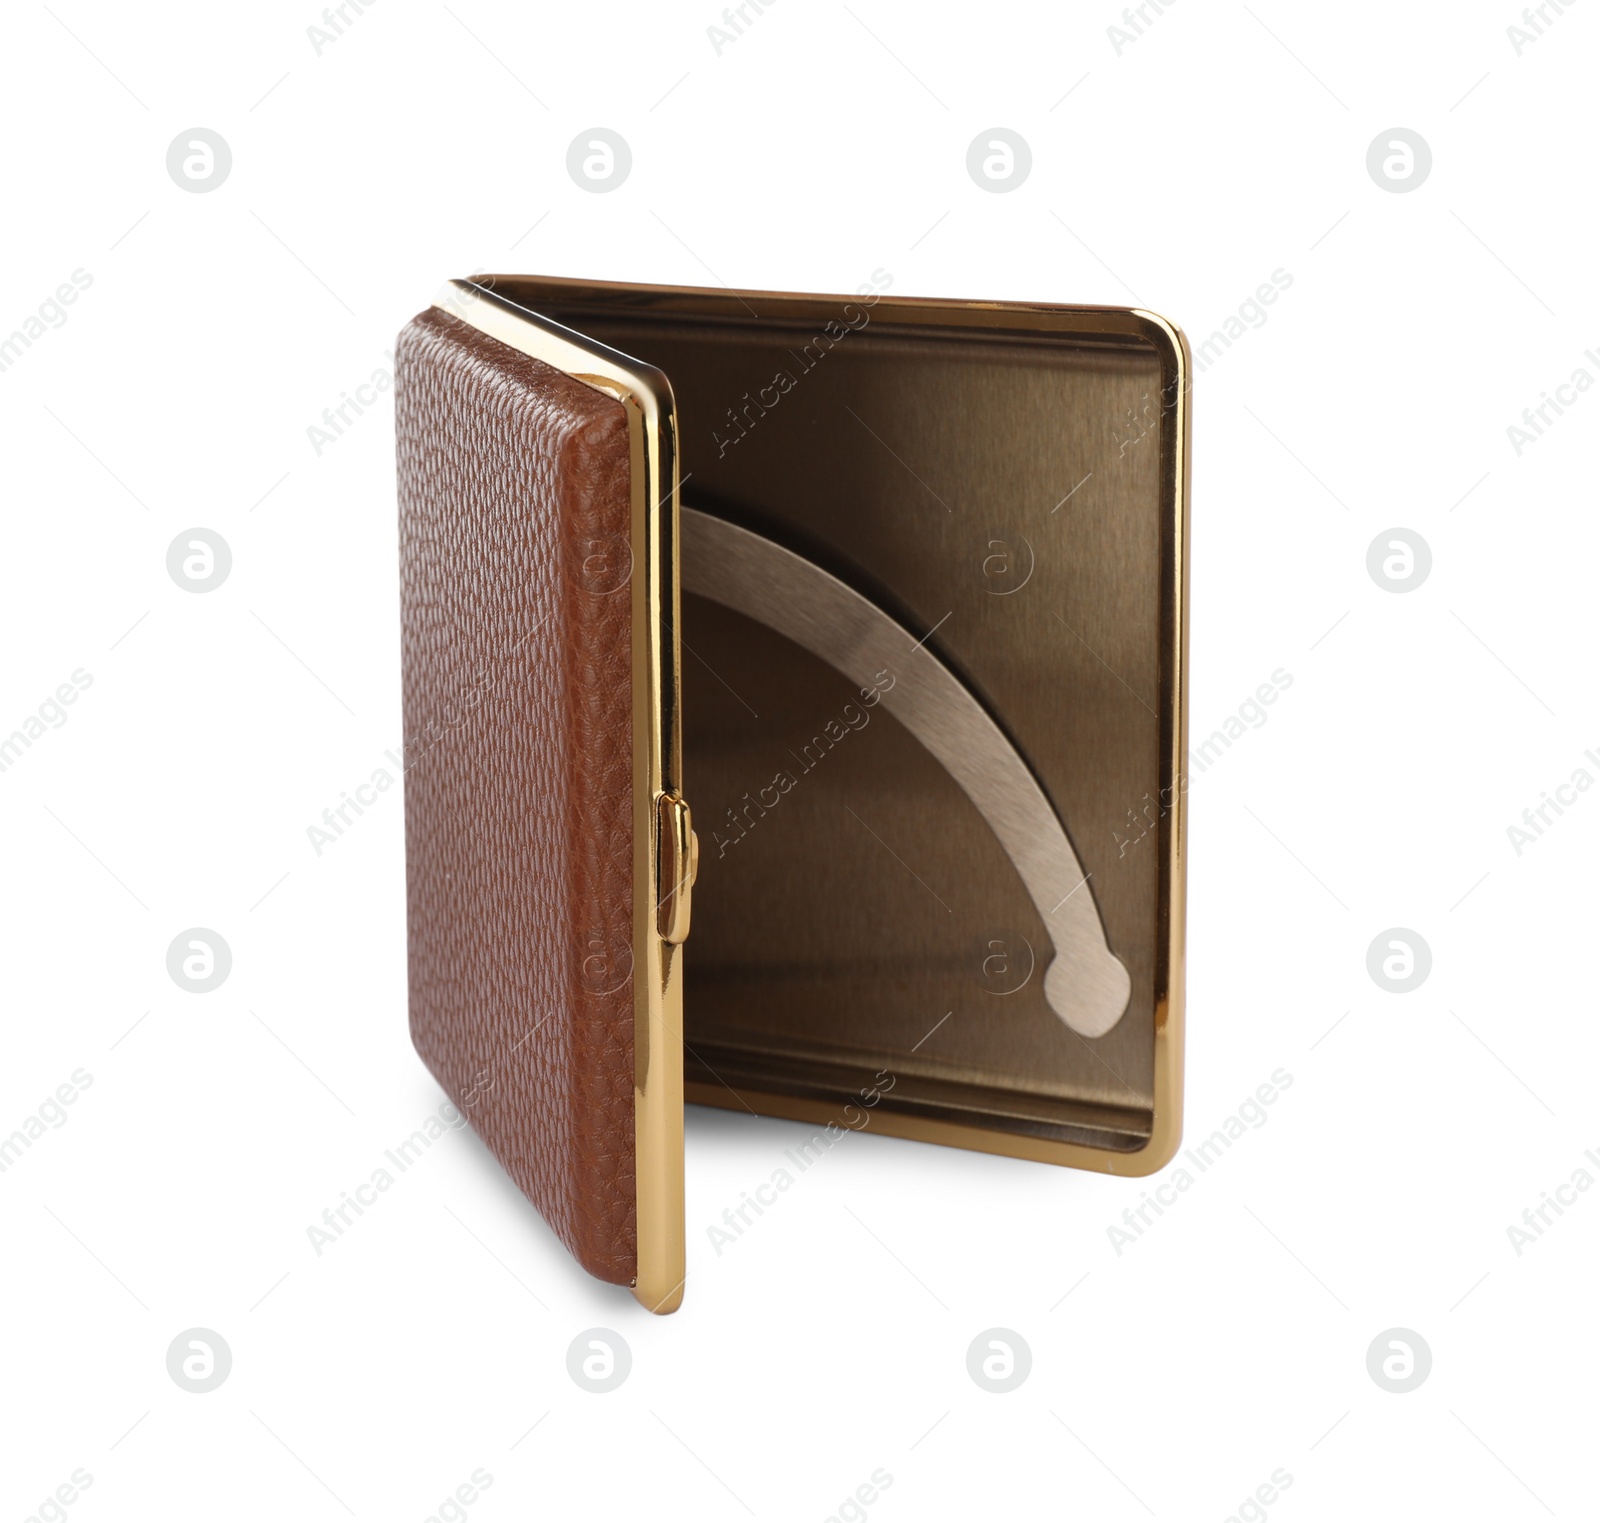 Photo of Stylish leather cigarette case isolated on white